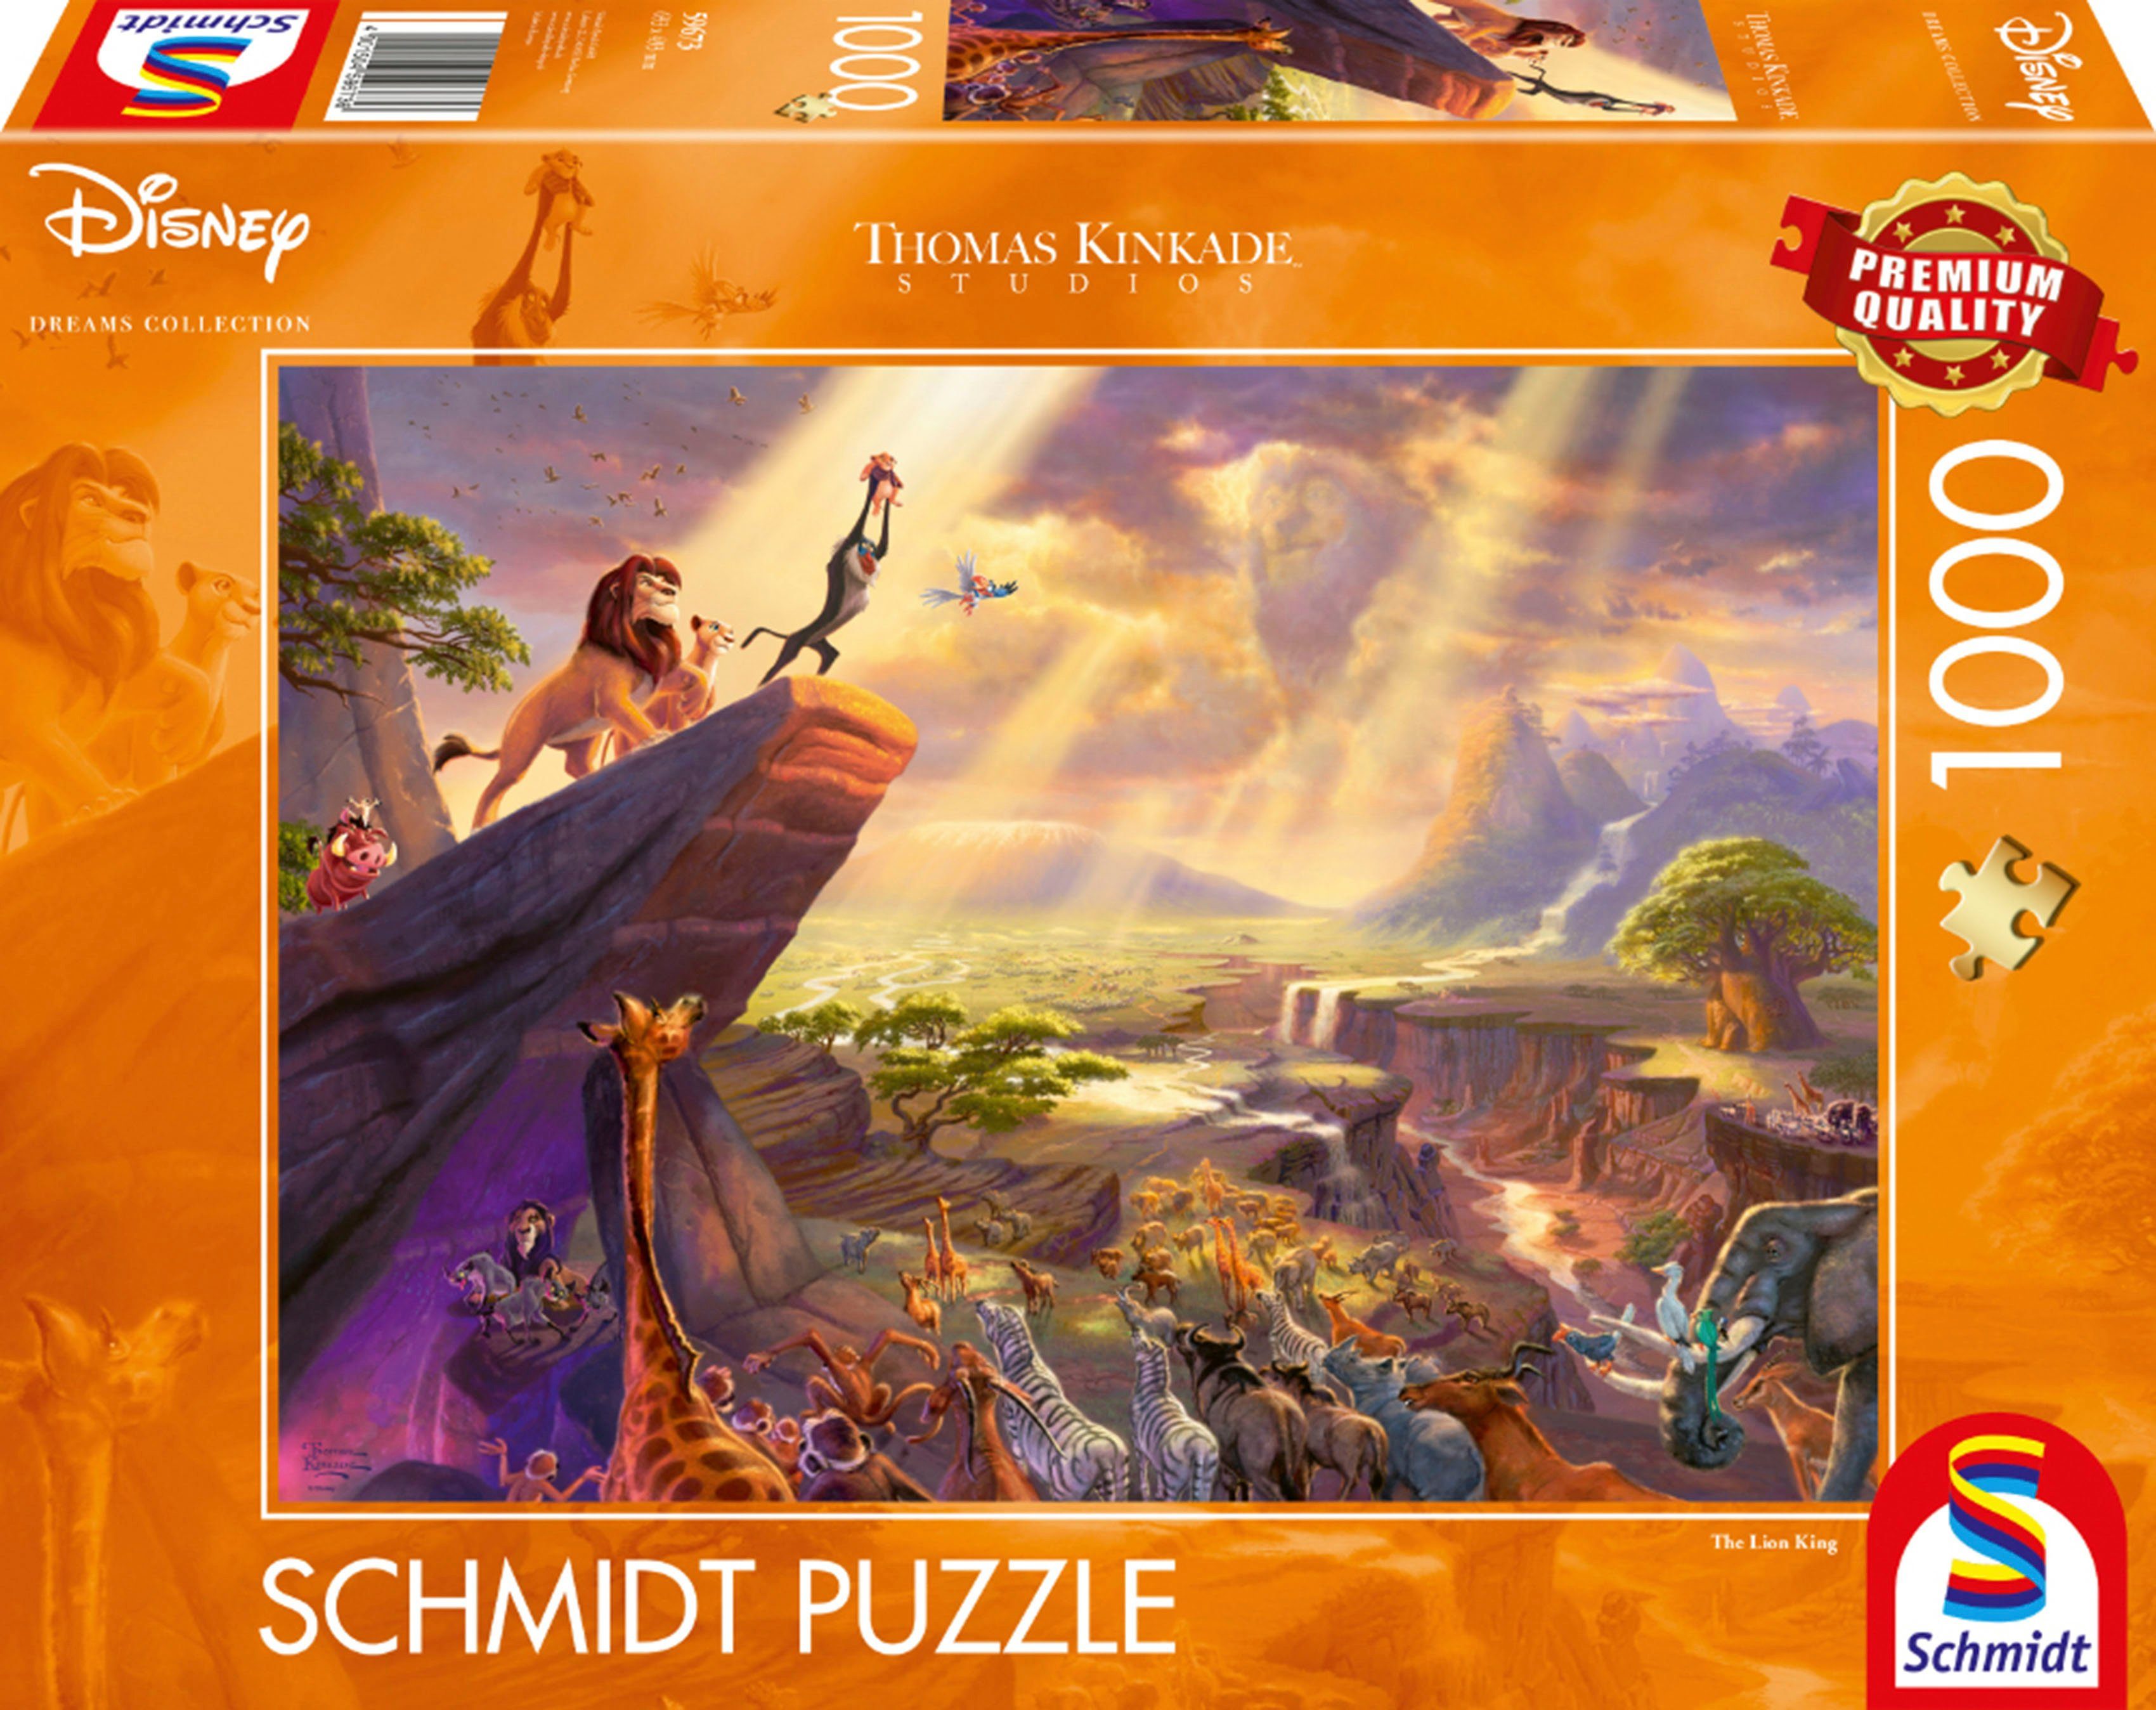 Schmidt Spiele Puzzle Disney, König der Löwen, 1000 Puzzleteile, Thomas Kinkade; Made in Europe